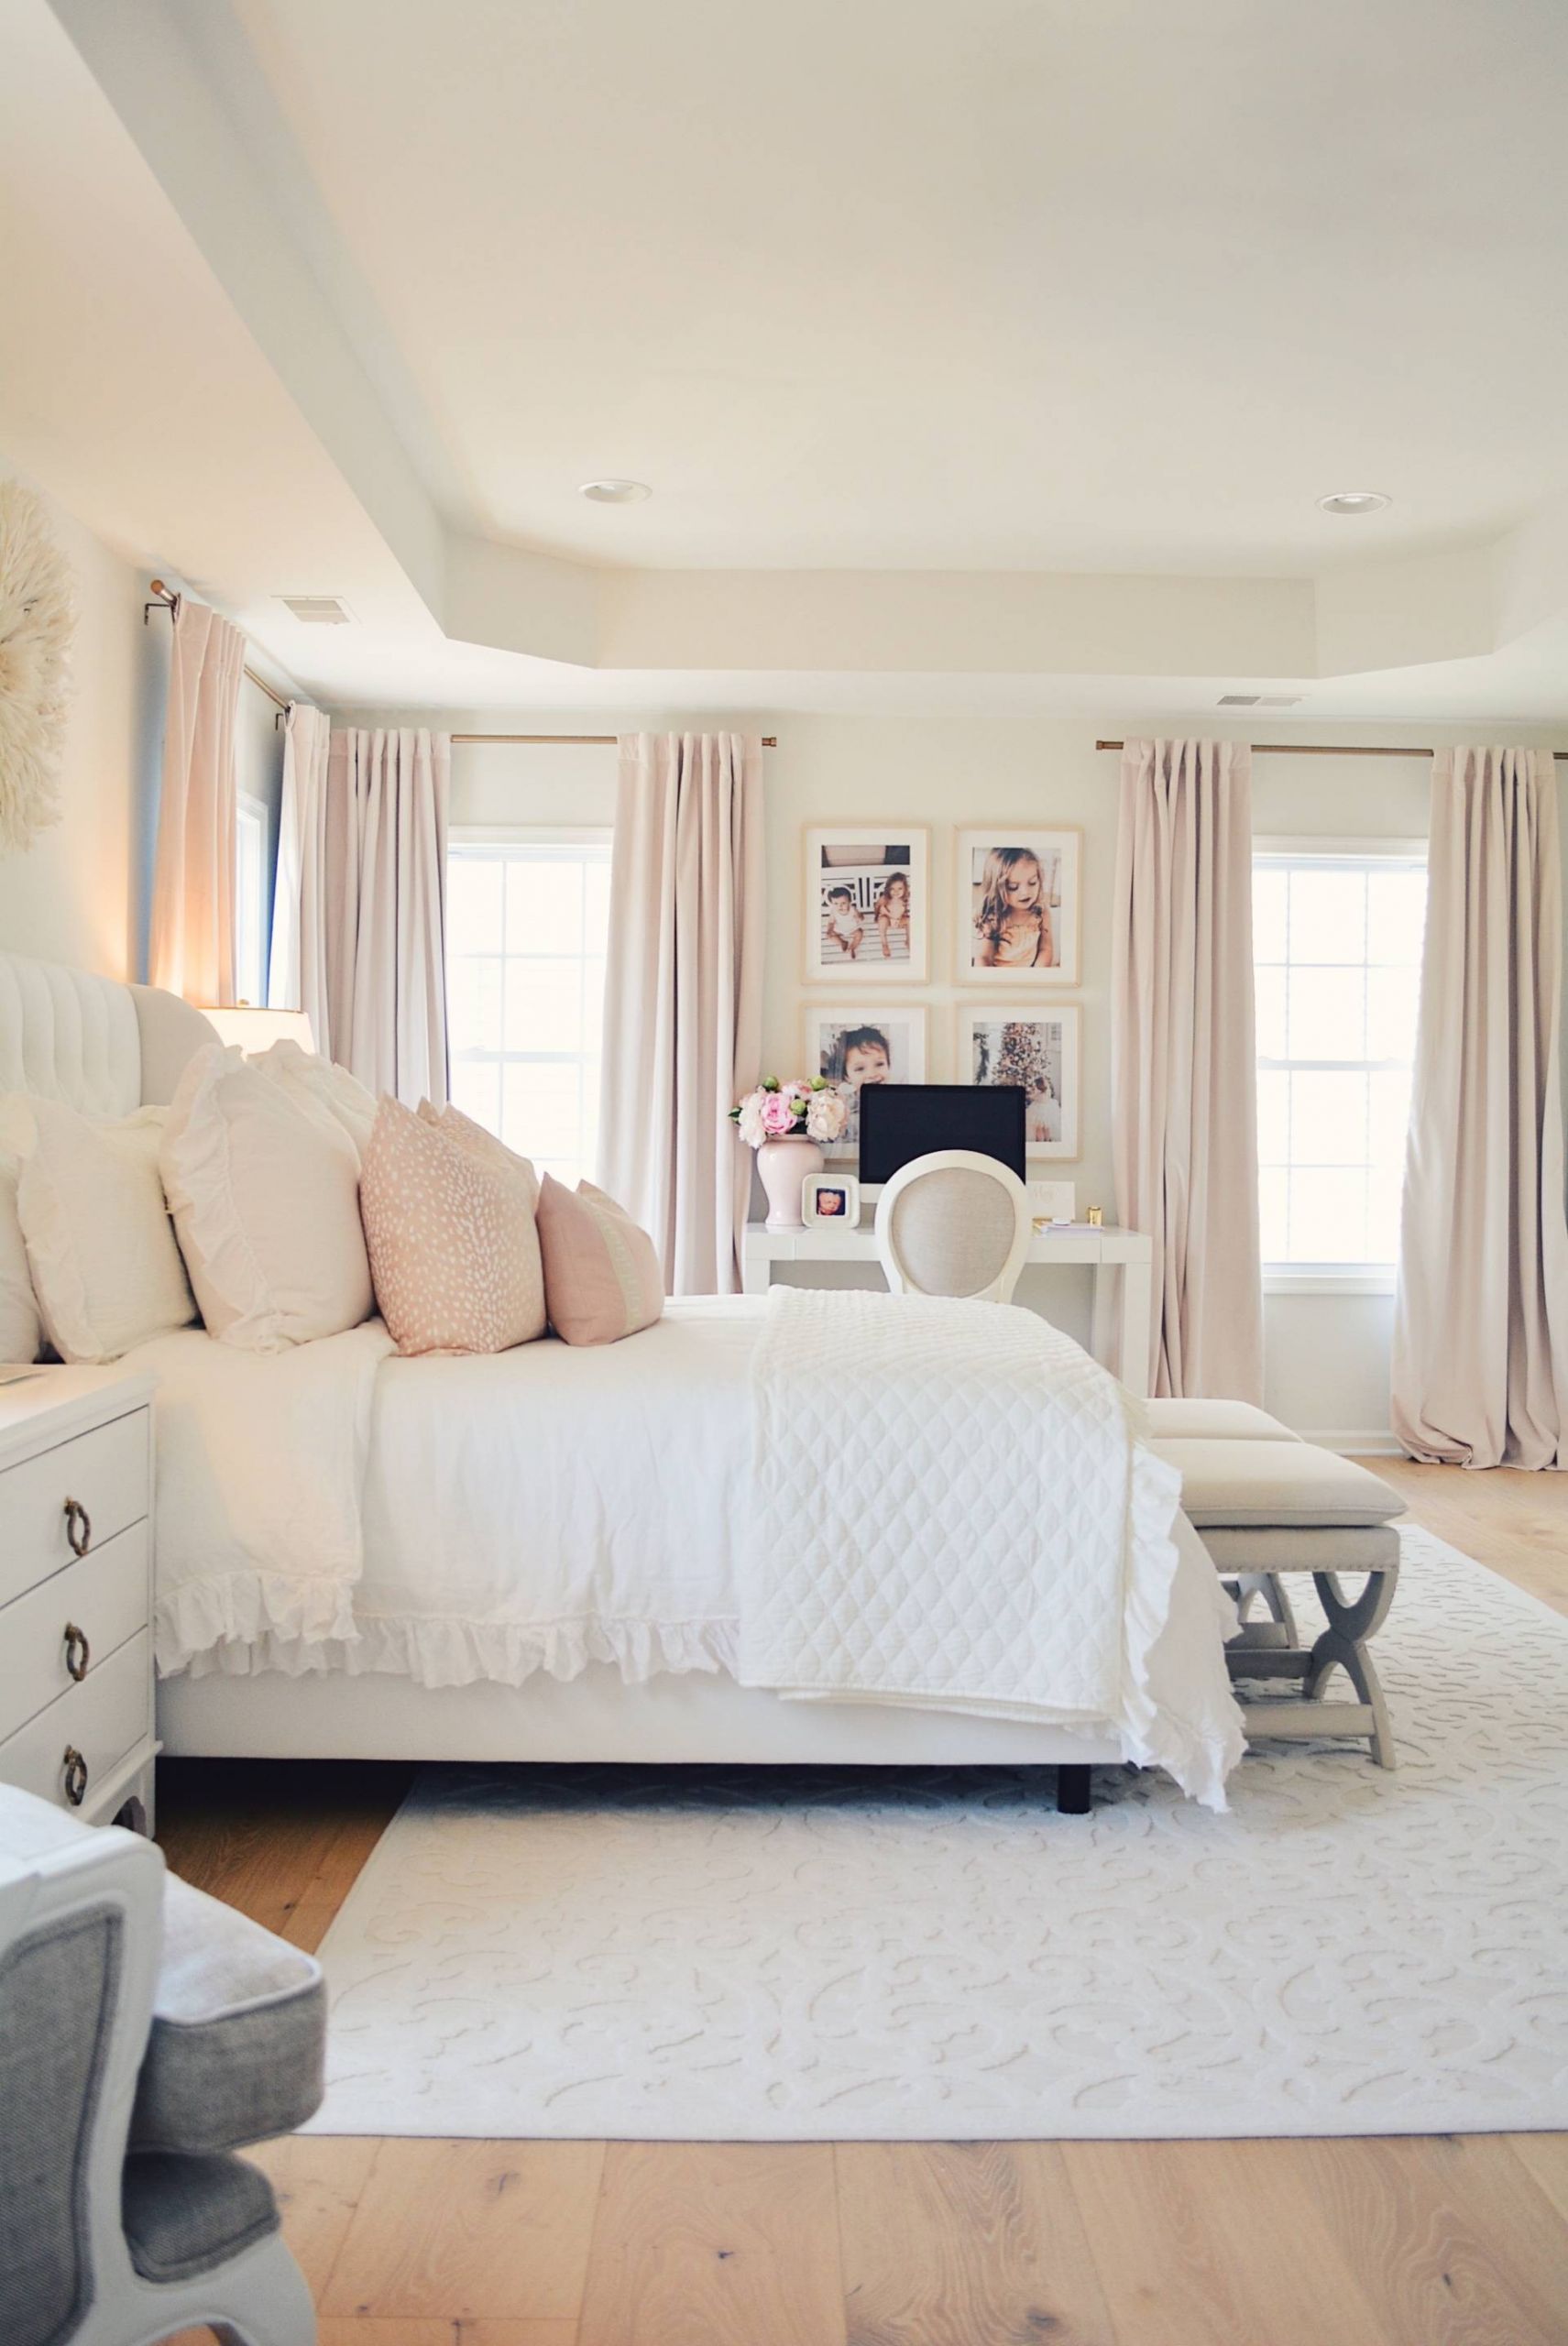 Elegant Bedspreads Master Bedroom
 Elegant White Master Bedroom & Blush Decorative Pillowsl